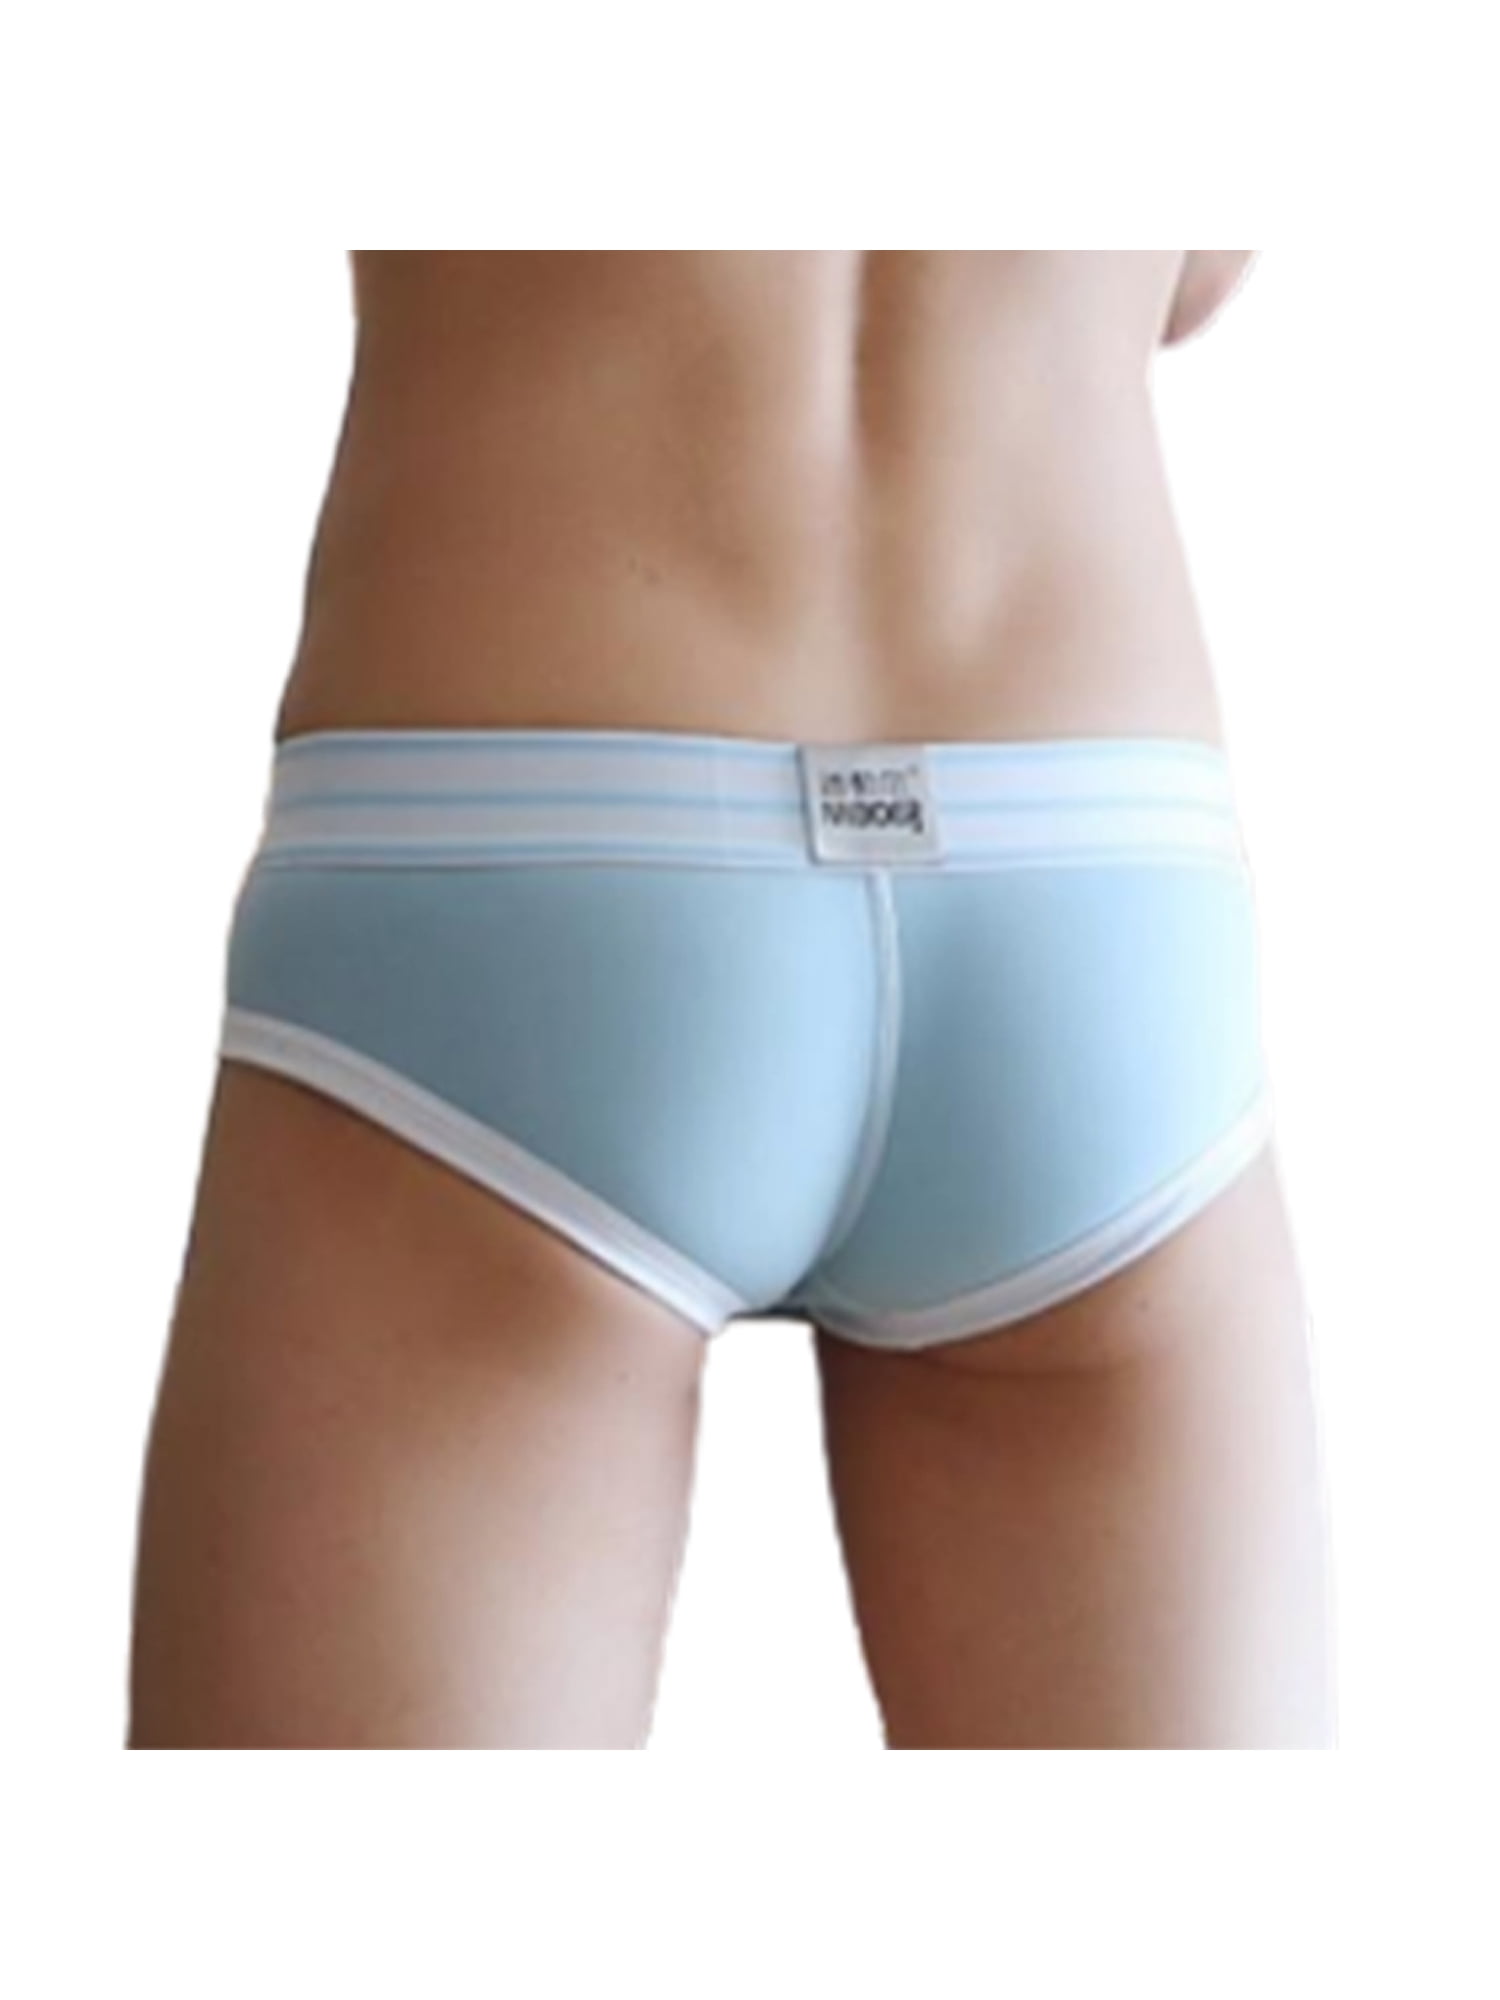 Breathable Mens Striped Underwear Lingerie Multicolor Bulge Pouch Briefs Panties